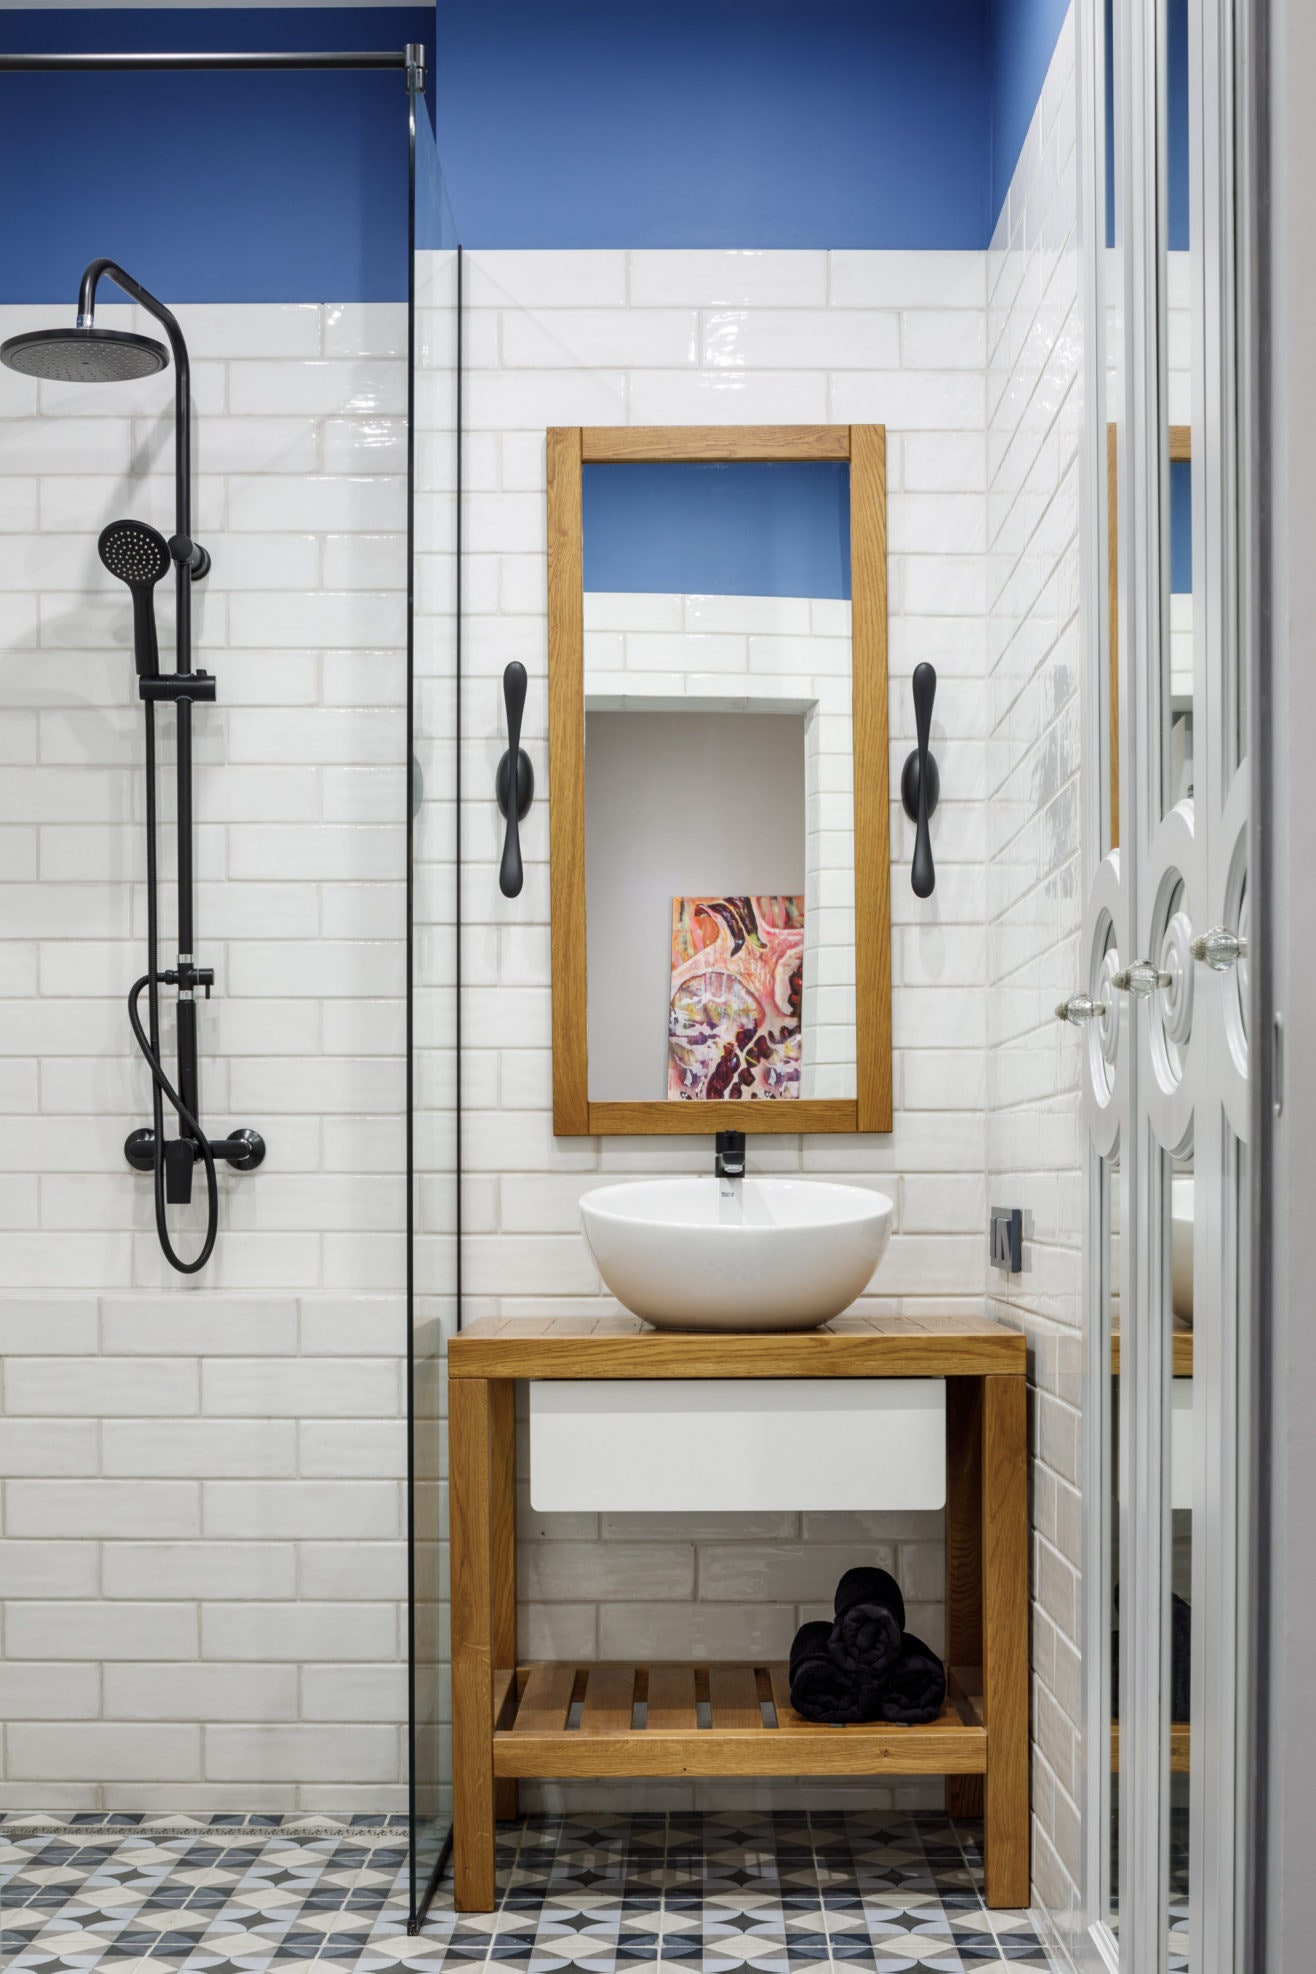 Квартира в СанктПетербурге 46 м². Ванная комната. Тумба зеркало шкафы изготовлены на заказ по эскизам дизайнеров плитка...